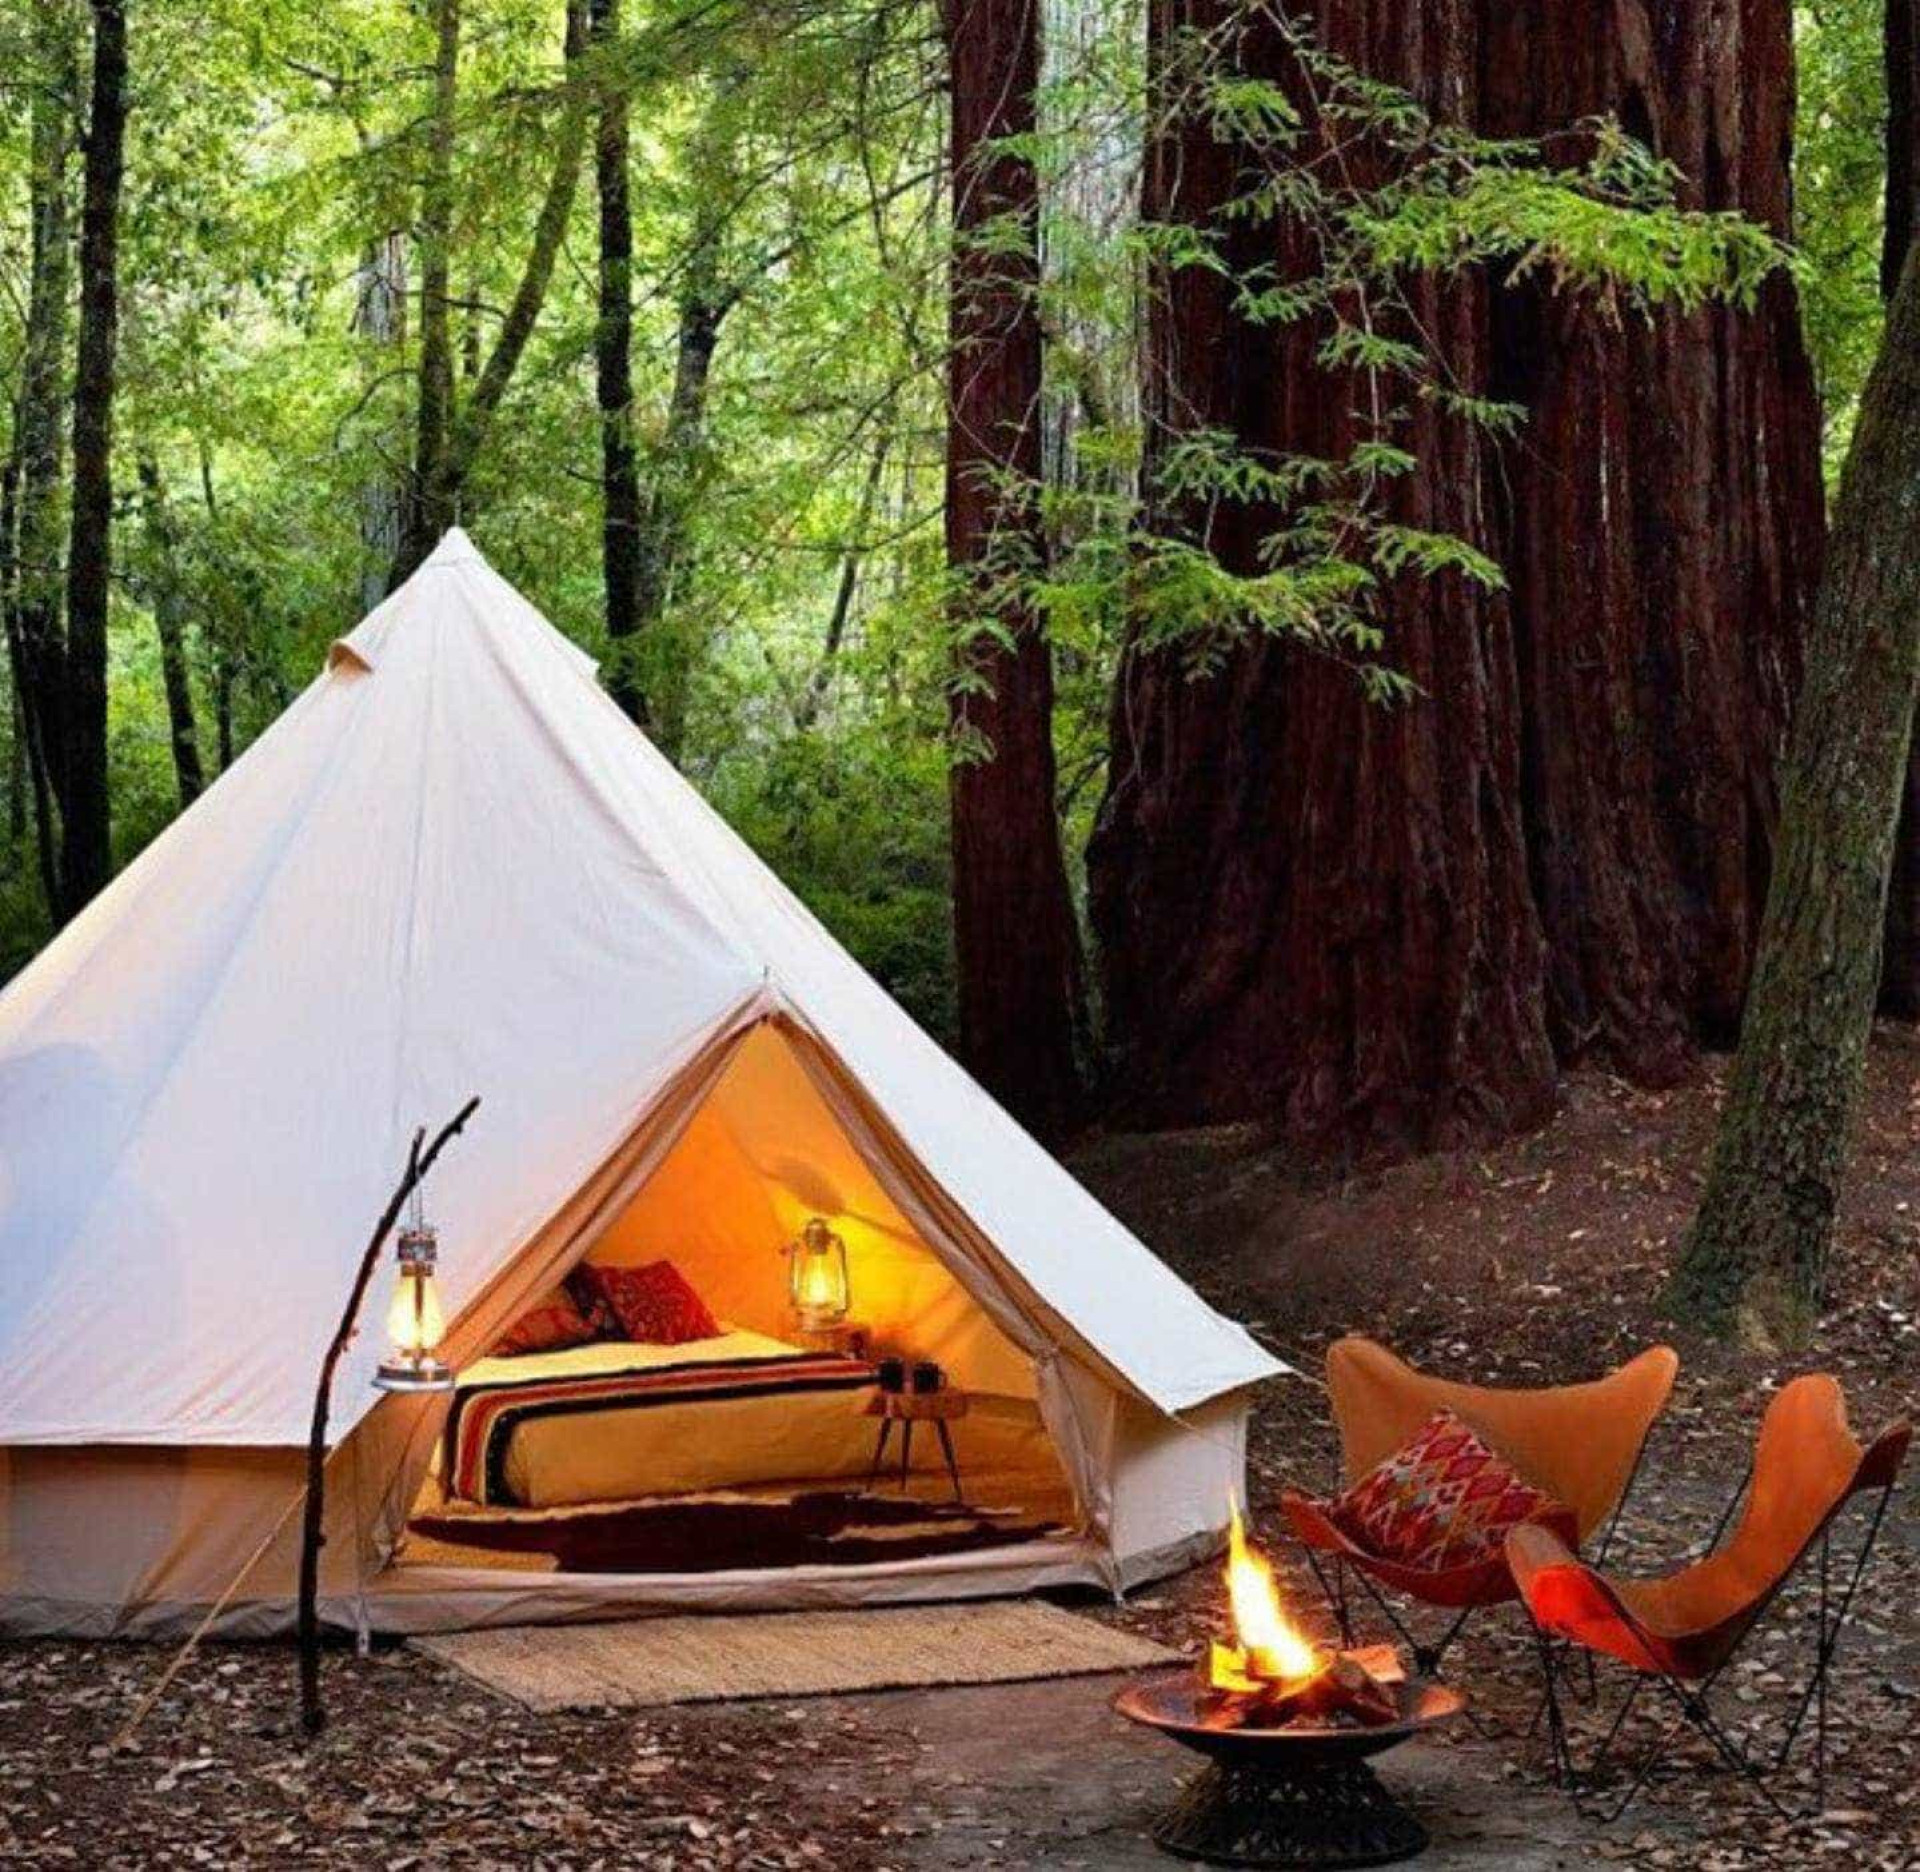 Палаточный лагерь палатки. Глэмпинг палаточный лагерь. Грин глэмпинг. Белл тент глэмпинг. Палатки для кемпинга.